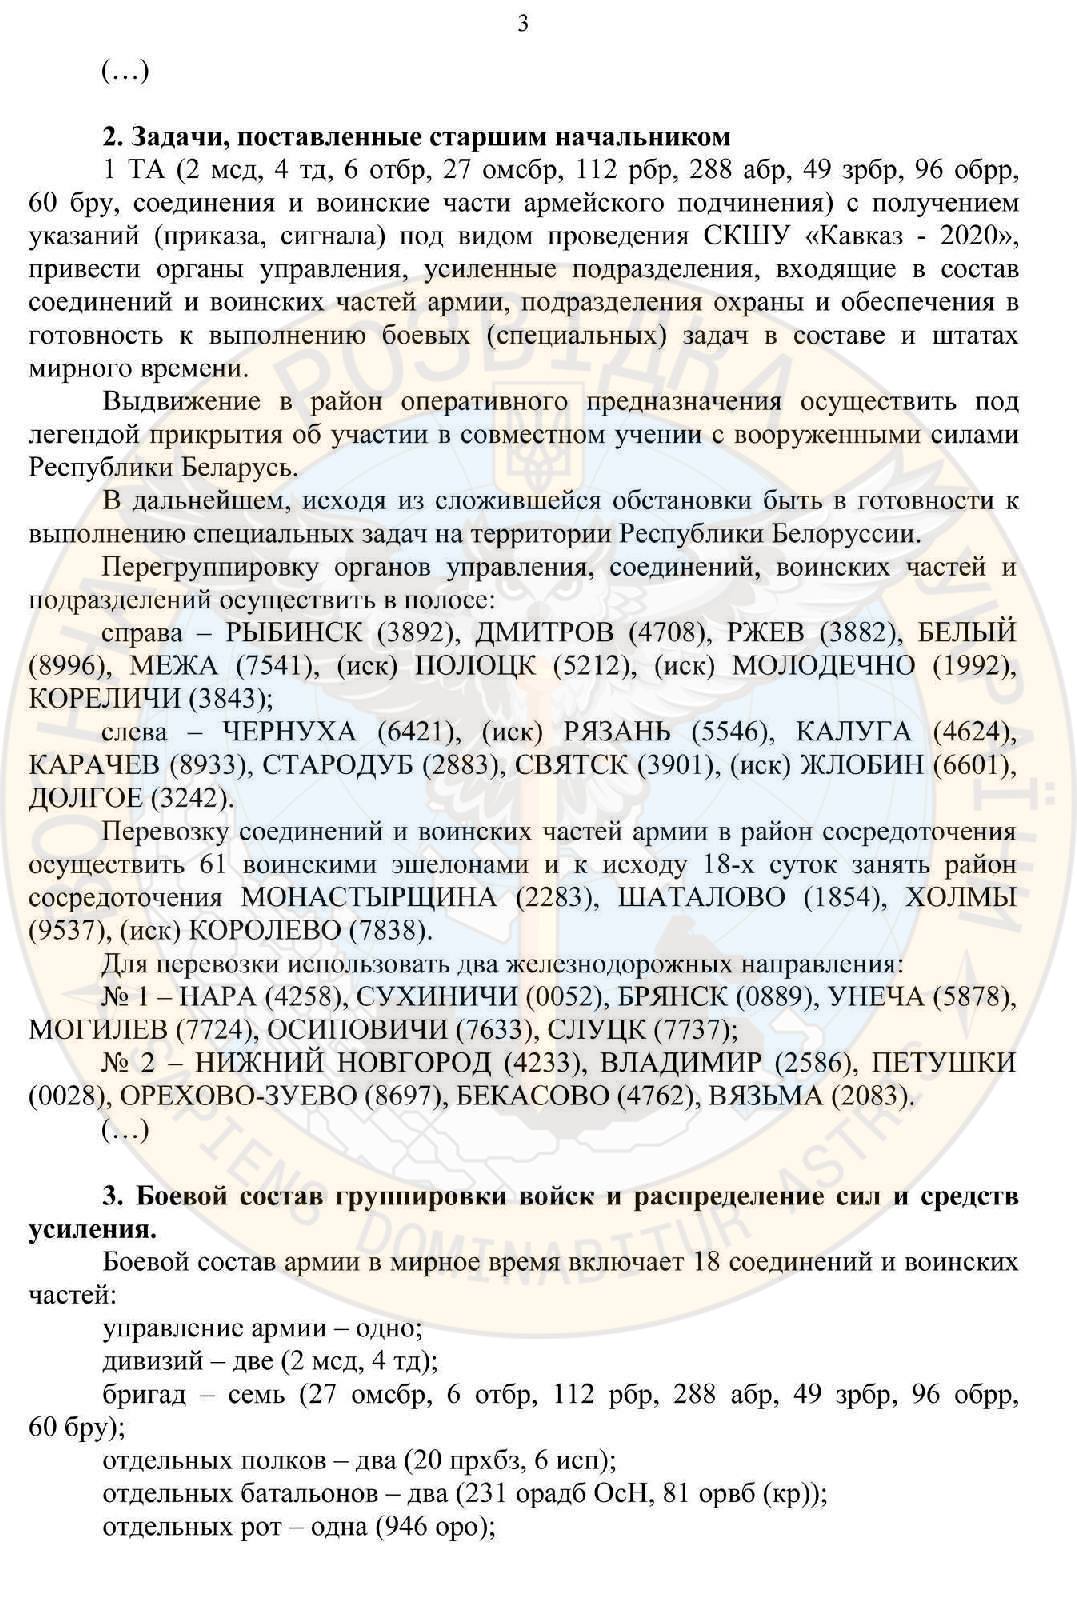 план рф захоплення білорусі, сторінка 3